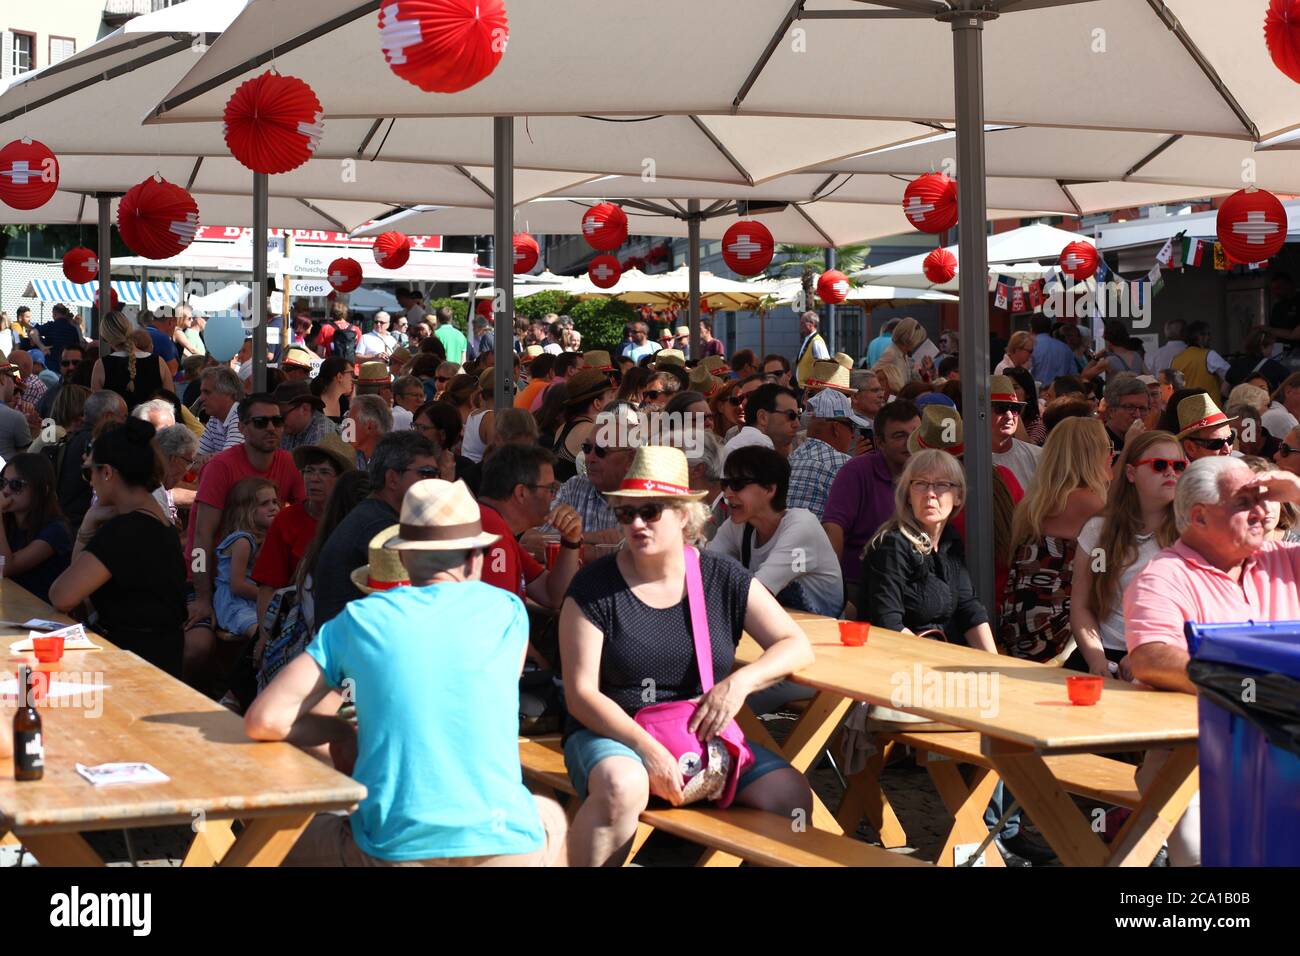 Zug / Schweiz - 01 2016. August: Feier des Schweizerischen Nationaltages (1. August) im Stadtzentrum von Zug - Altstadt, am See gelegen Stockfoto